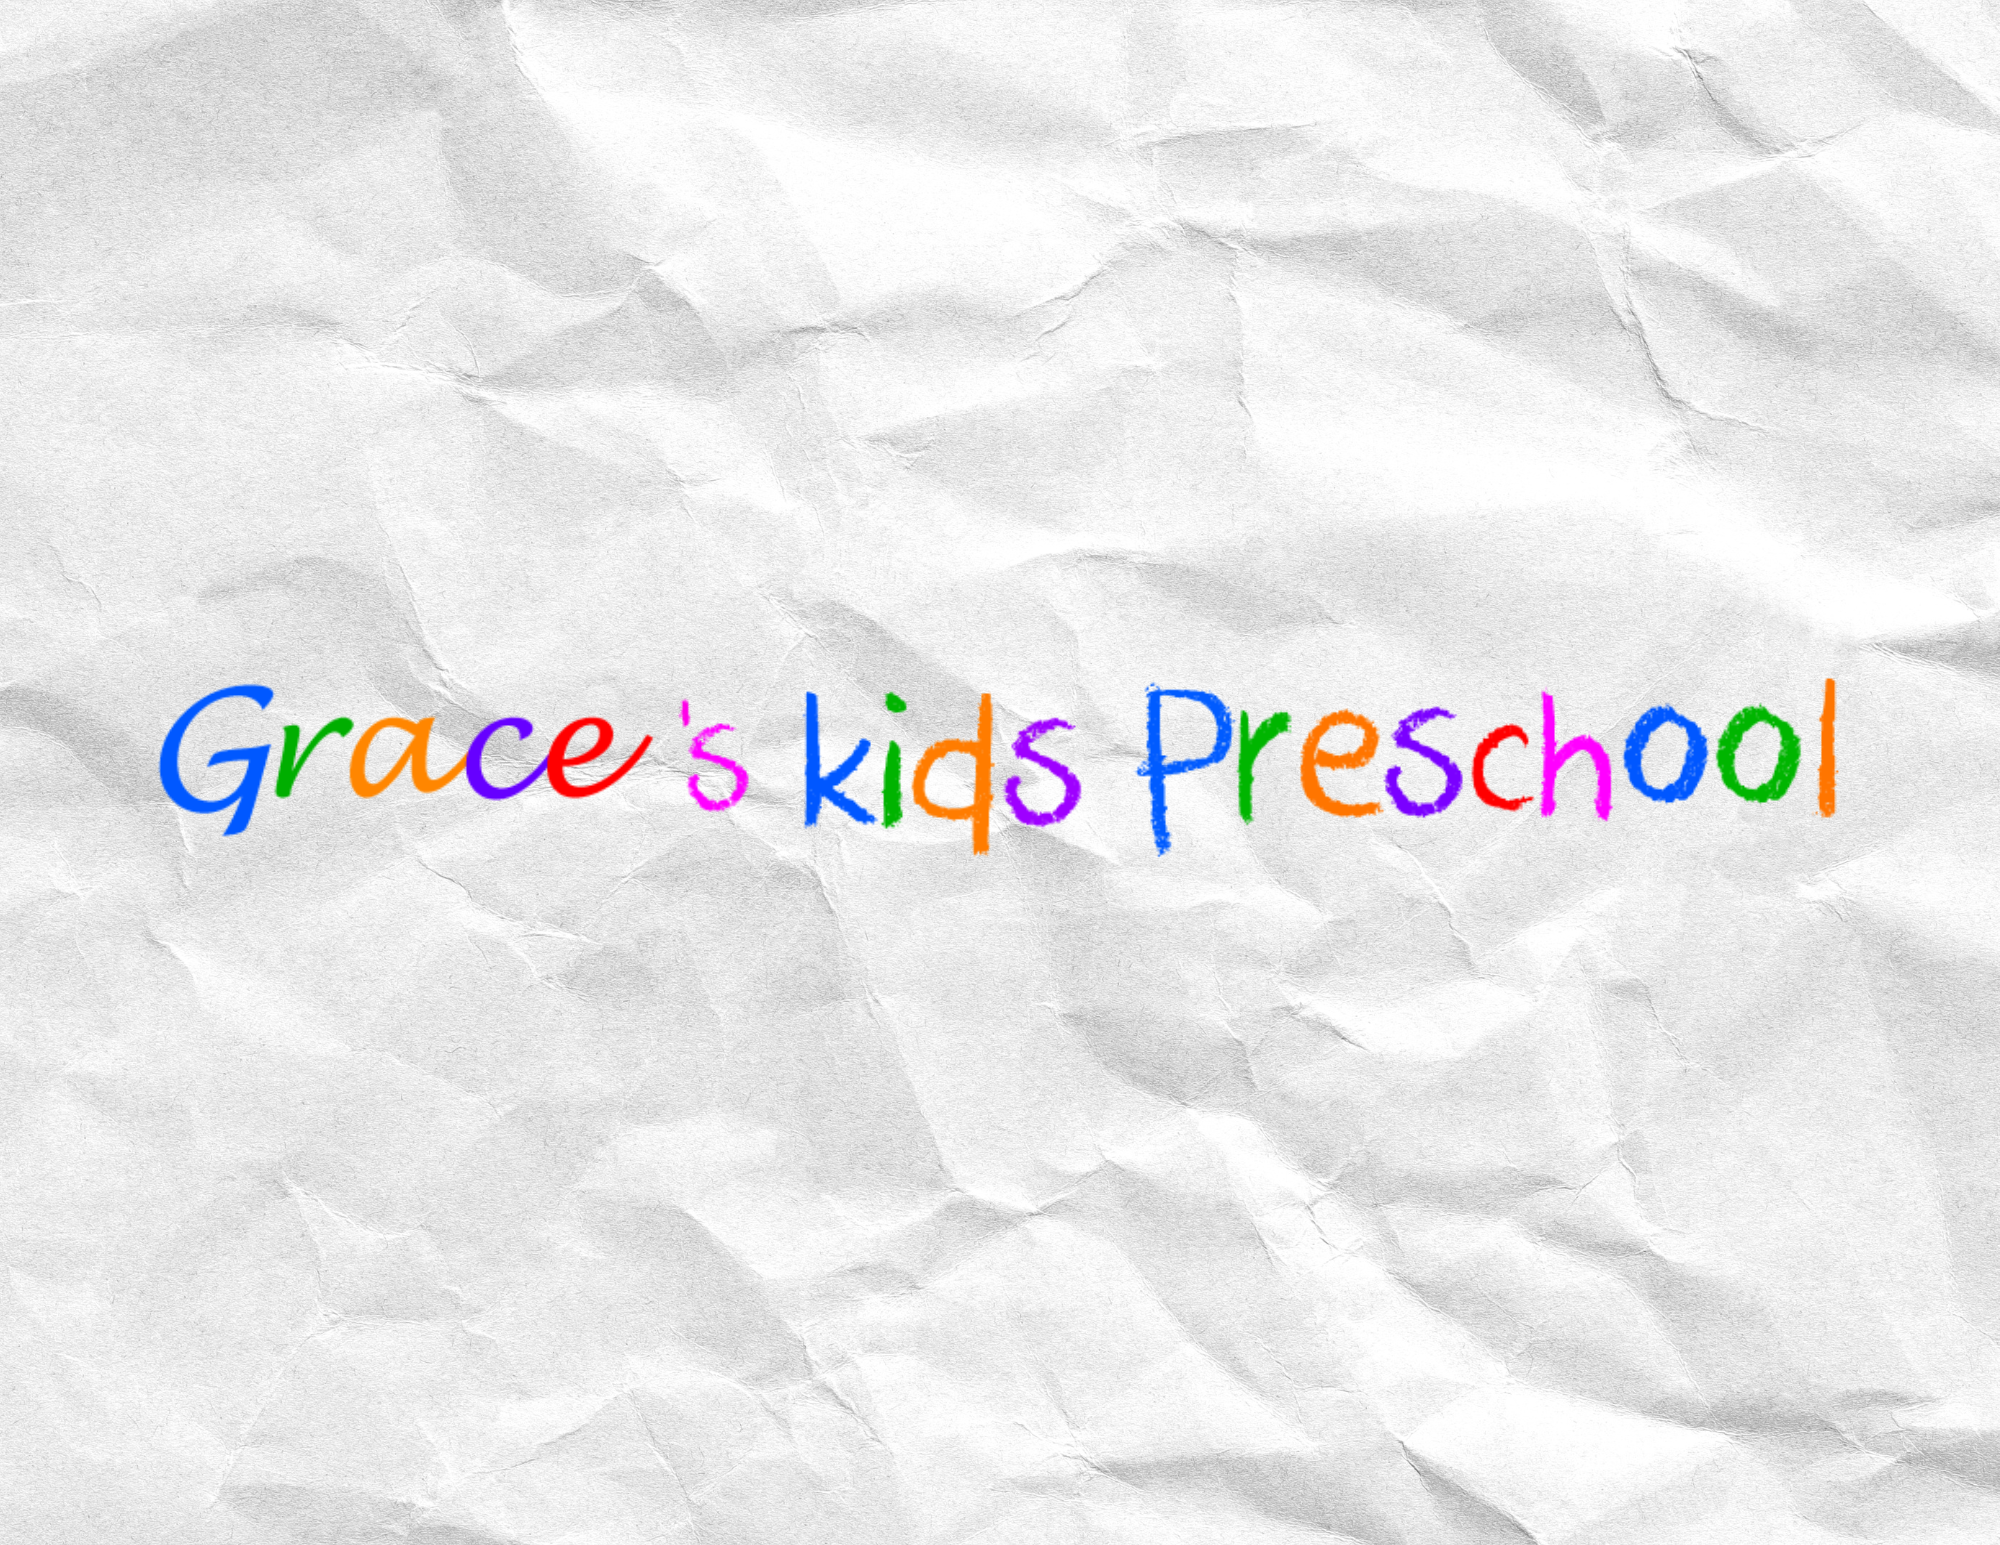 Grace's Kids Preschool image